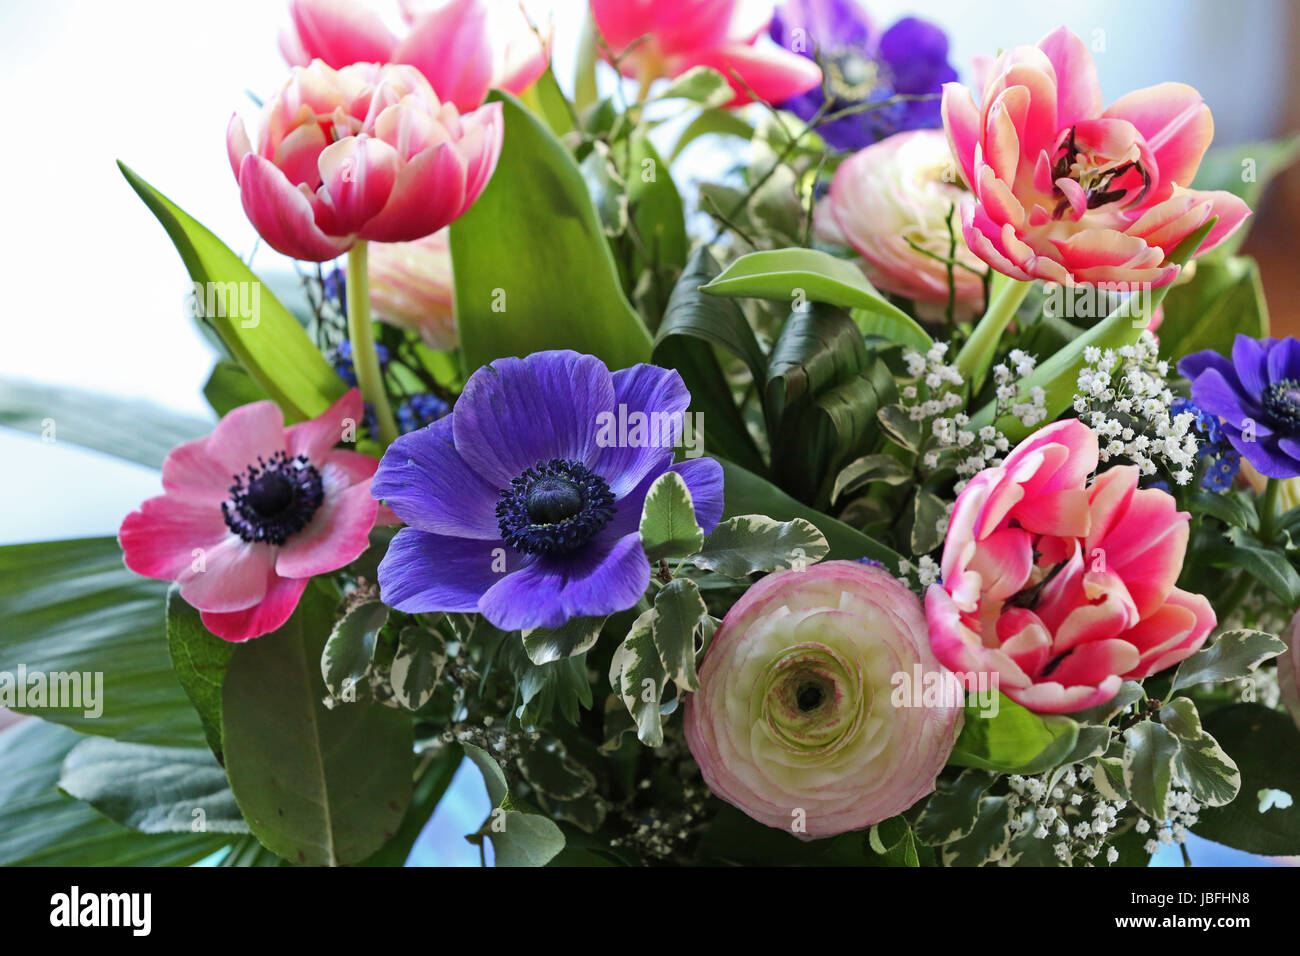 blumenstrauss mit anemonen, ranunkeln,tulpen Stock Photo